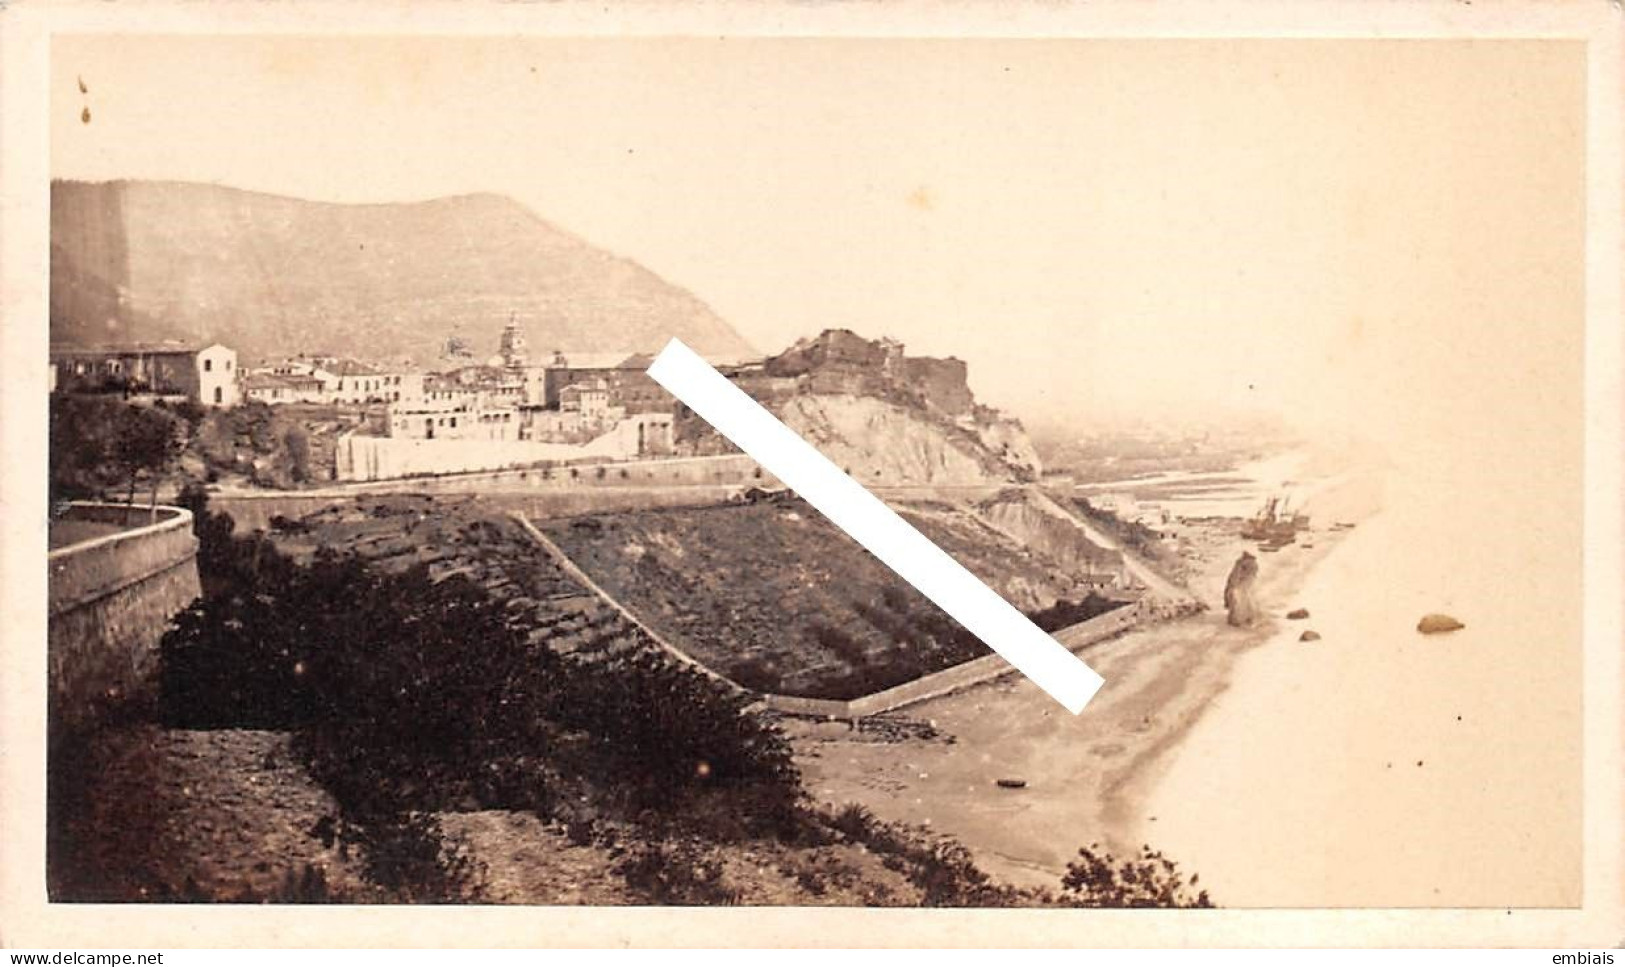 MONACO 1865/70 - Photo Originale CDV La Cité De Monaco, Monté Carlo Par Le Photographe Louis Alphonse DAVANNE - Old (before 1900)